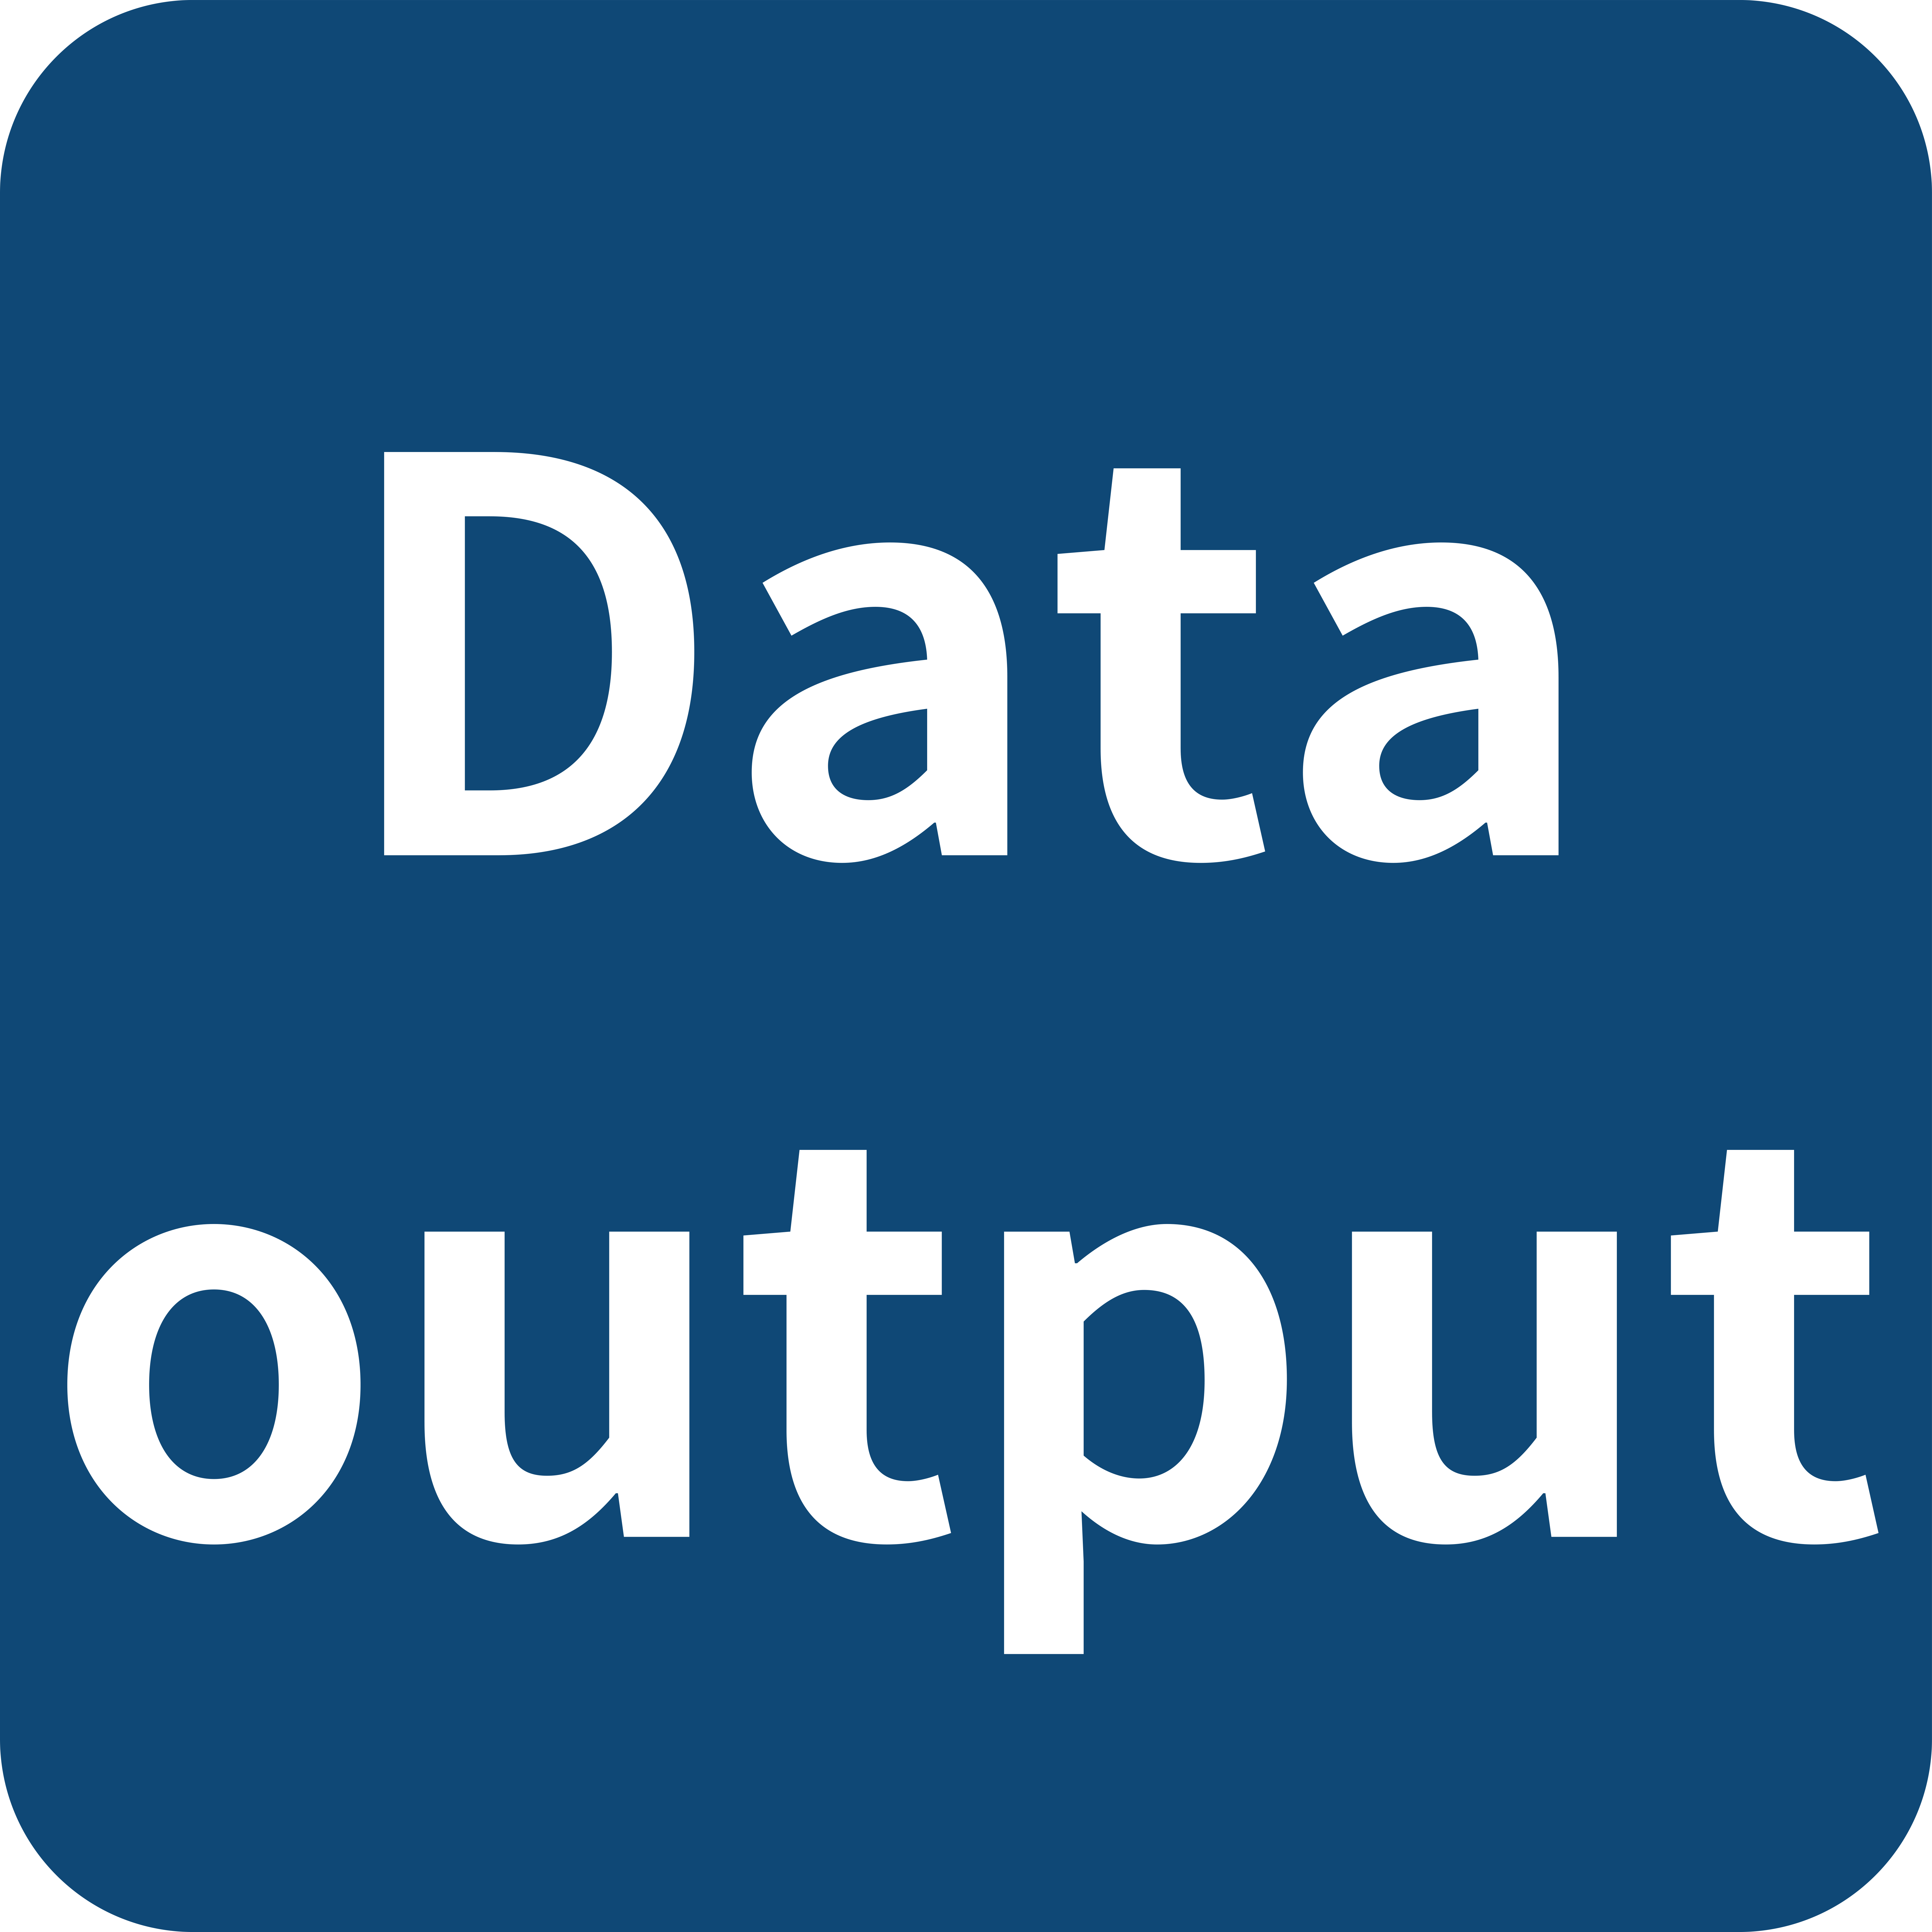 Data output